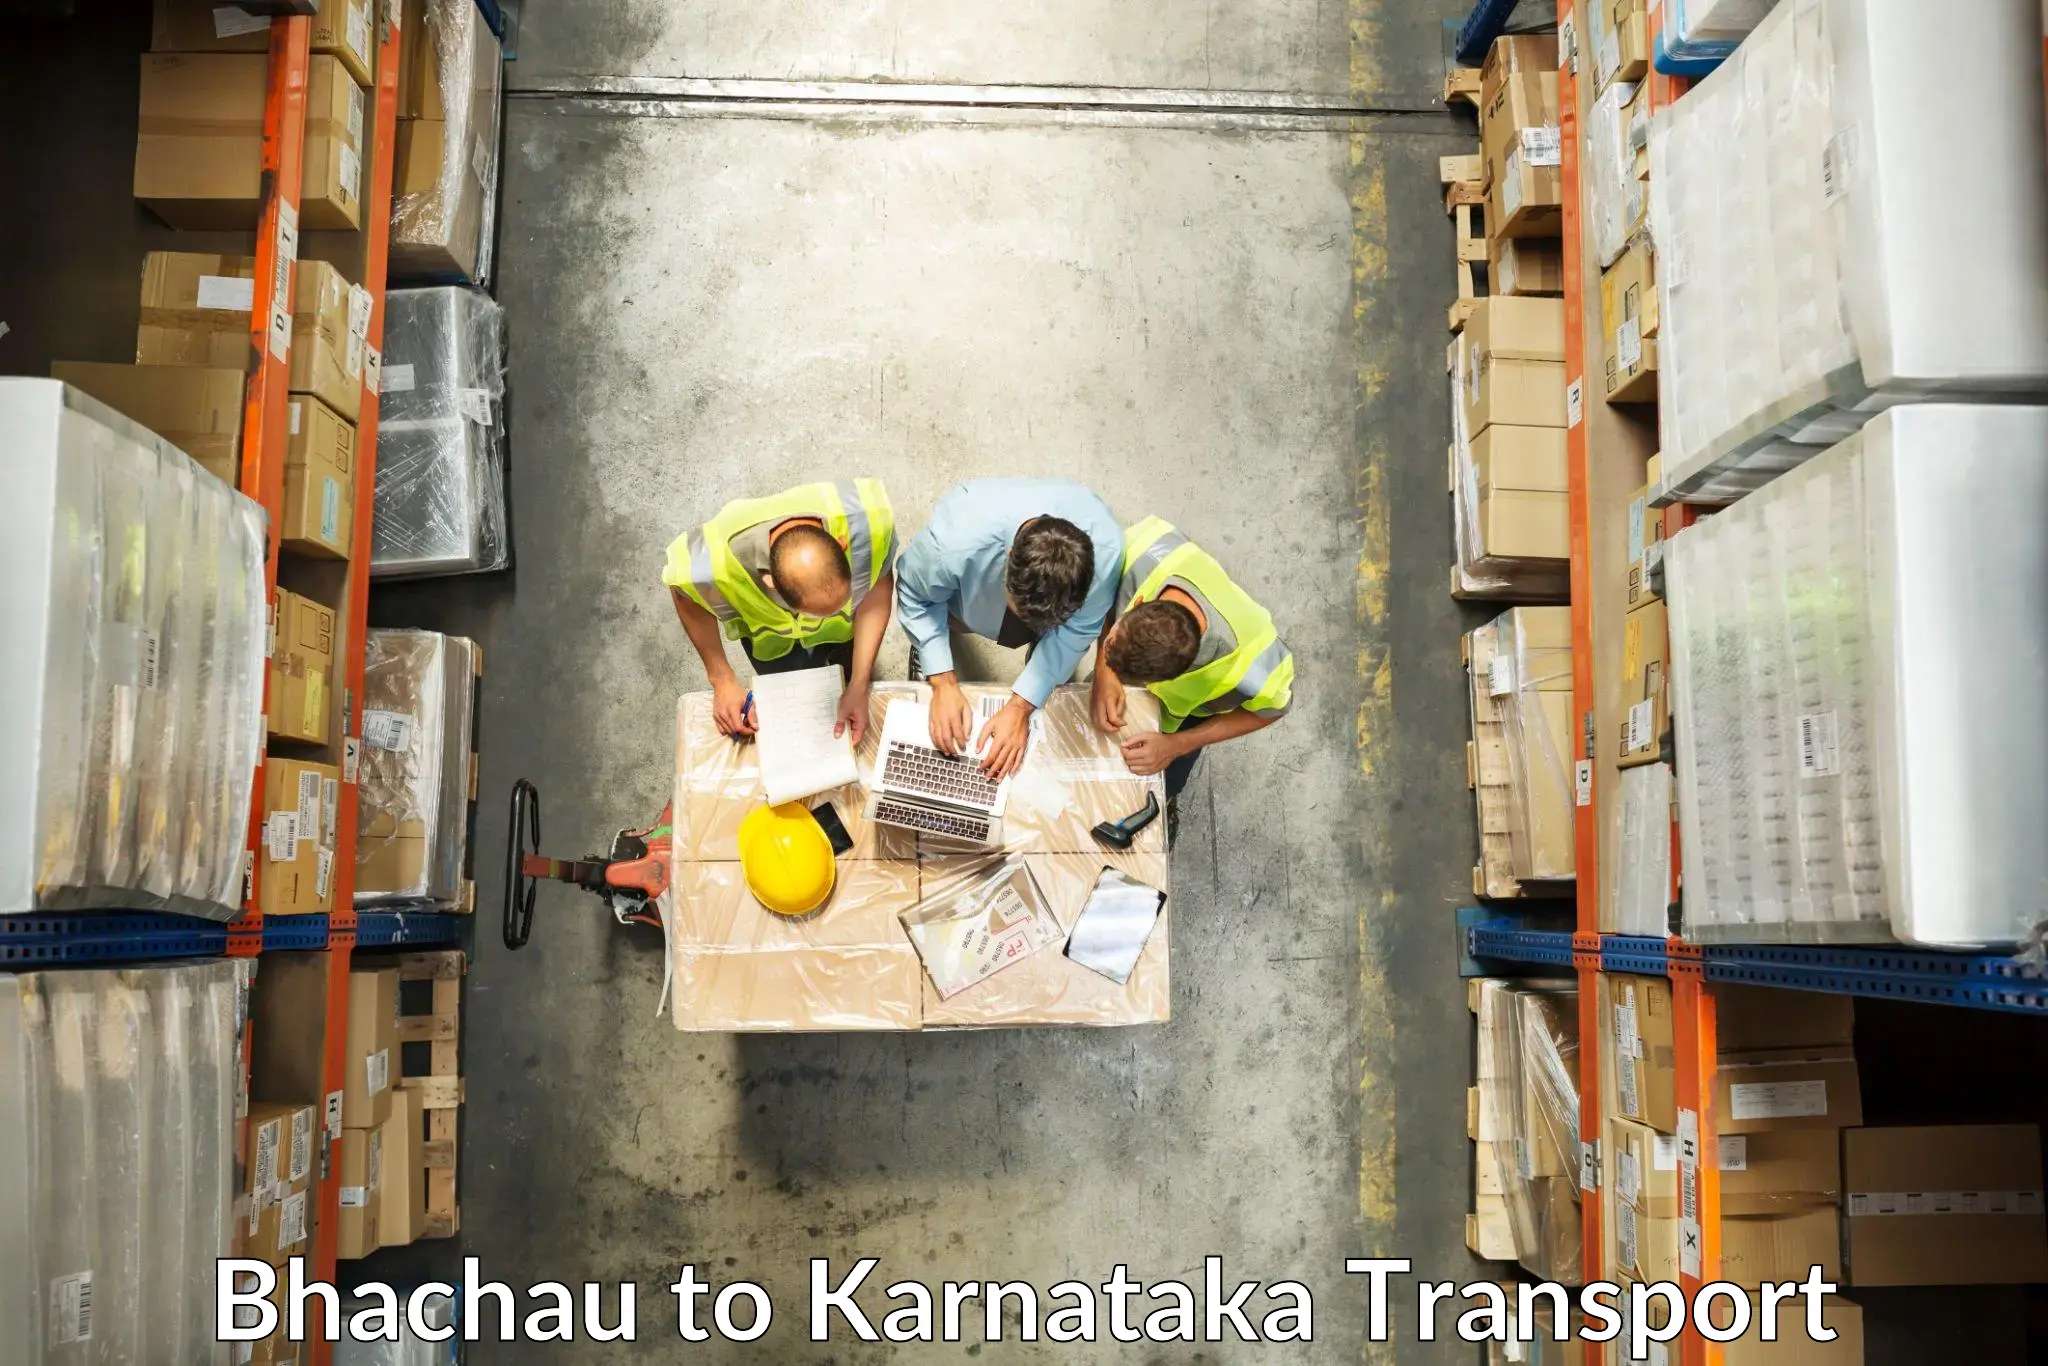 Commercial transport service Bhachau to Kanakapura